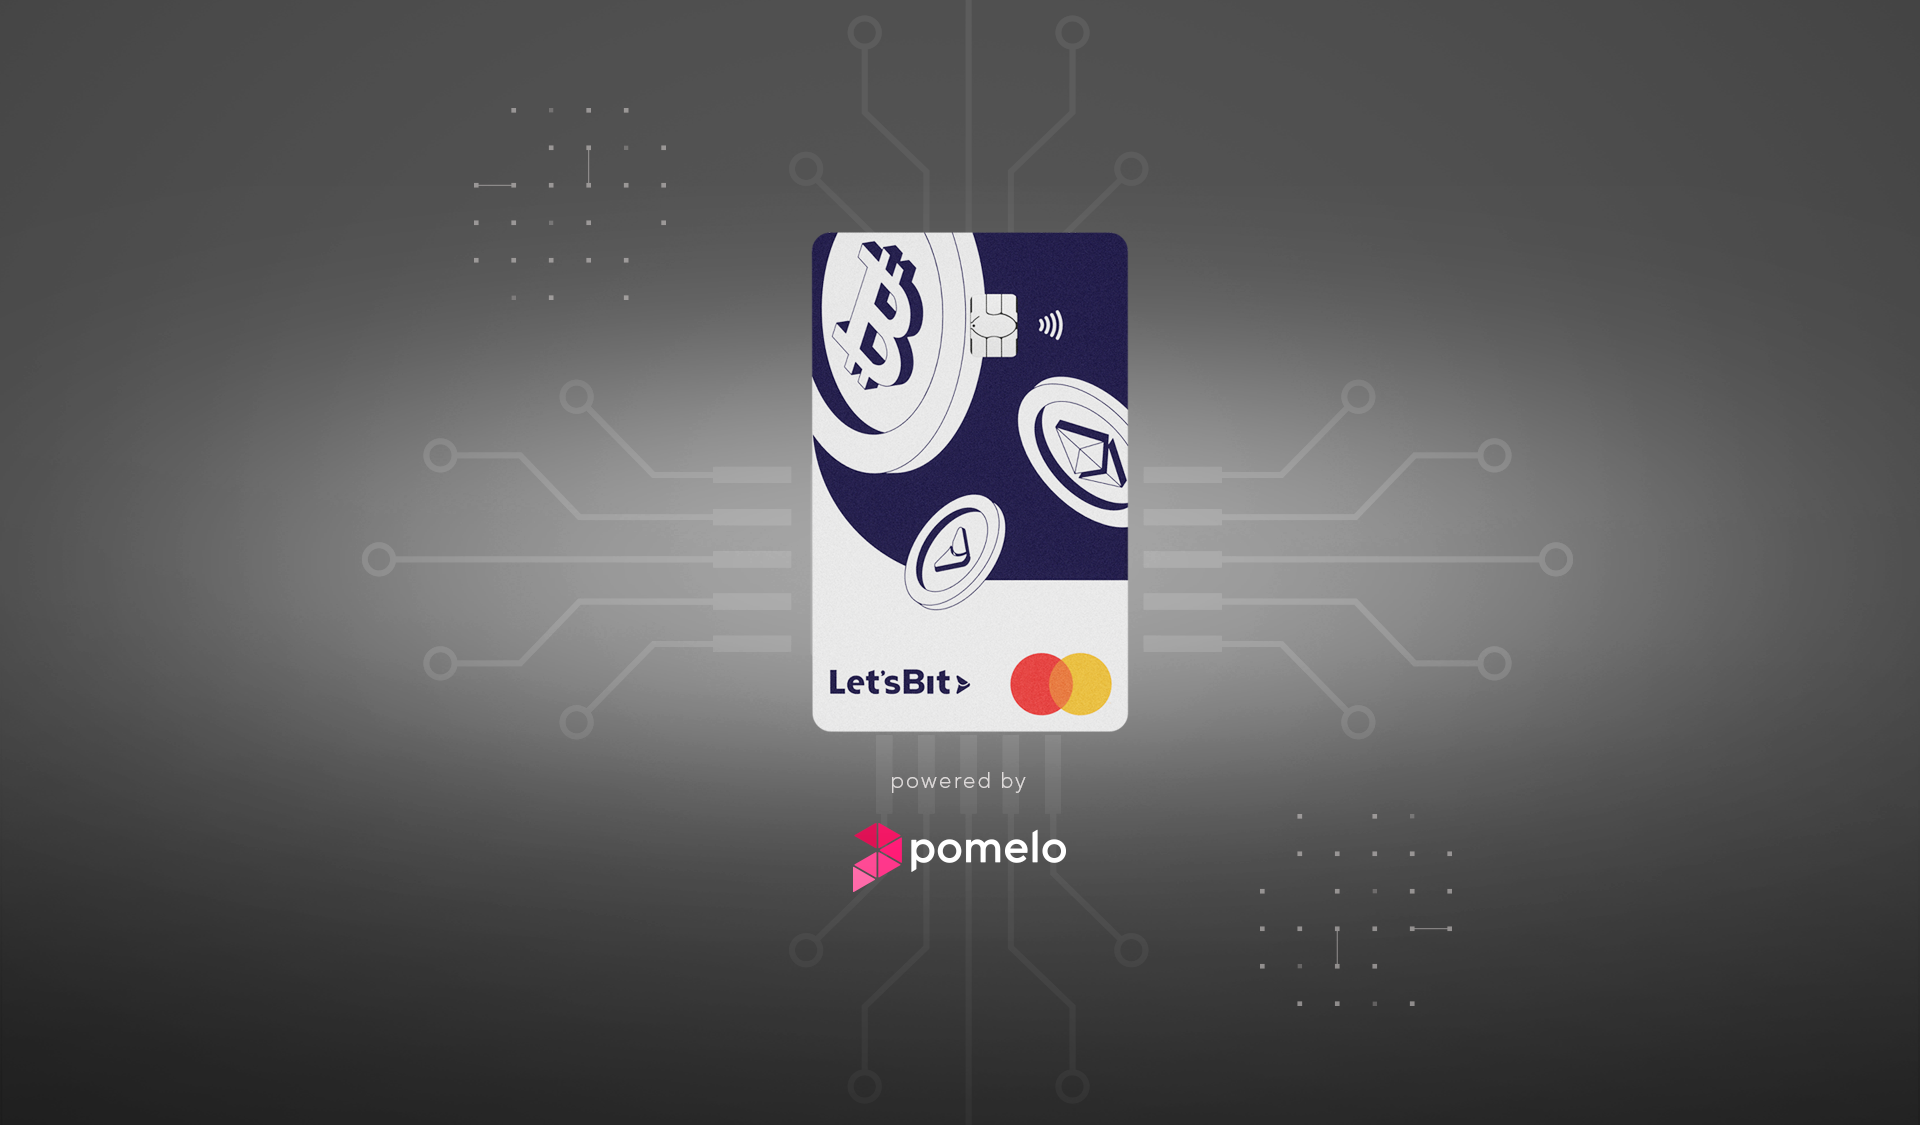 Tarjeta Letsbit powered by Pomelo